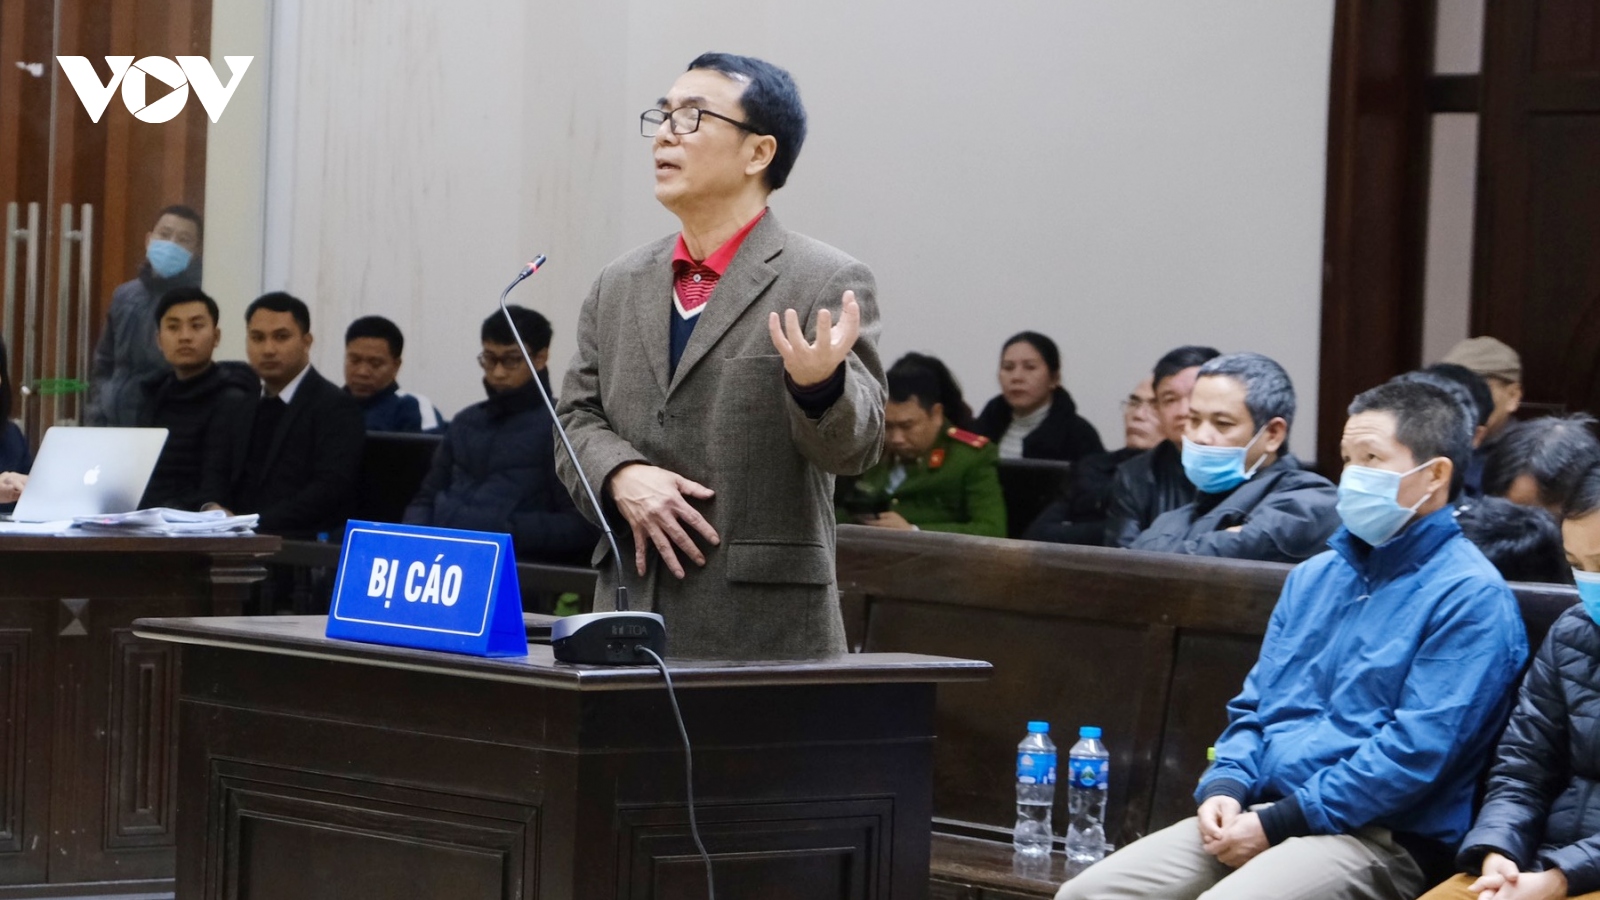 Bị cáo Trần Hùng: "Hàng chục năm công tác không đối tượng nào mua chuộc được tôi"